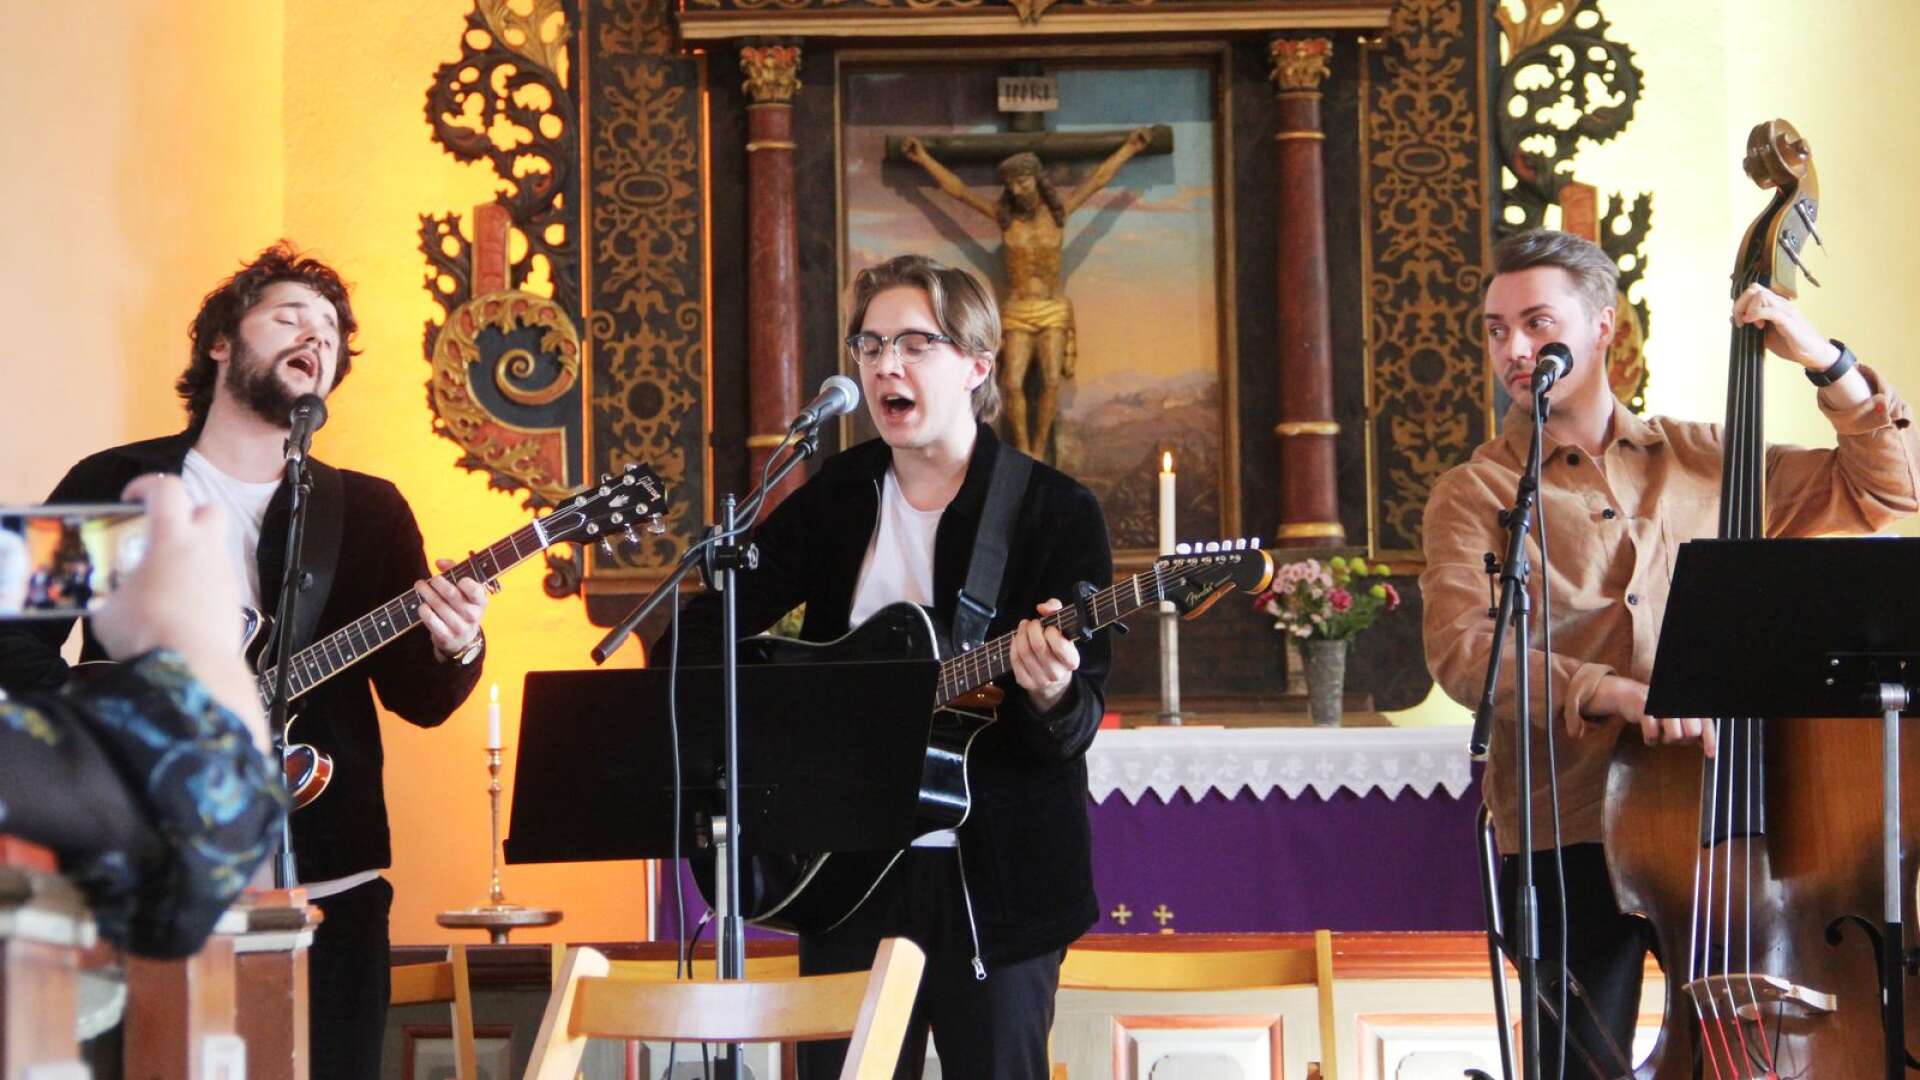 Skönsång. Charlie Nylén, Oskar Olsson och Love Bohlin spelade och sjöng vackert i stämmor, bland annat i What a wonderful world och Strövtåg i hembygden.